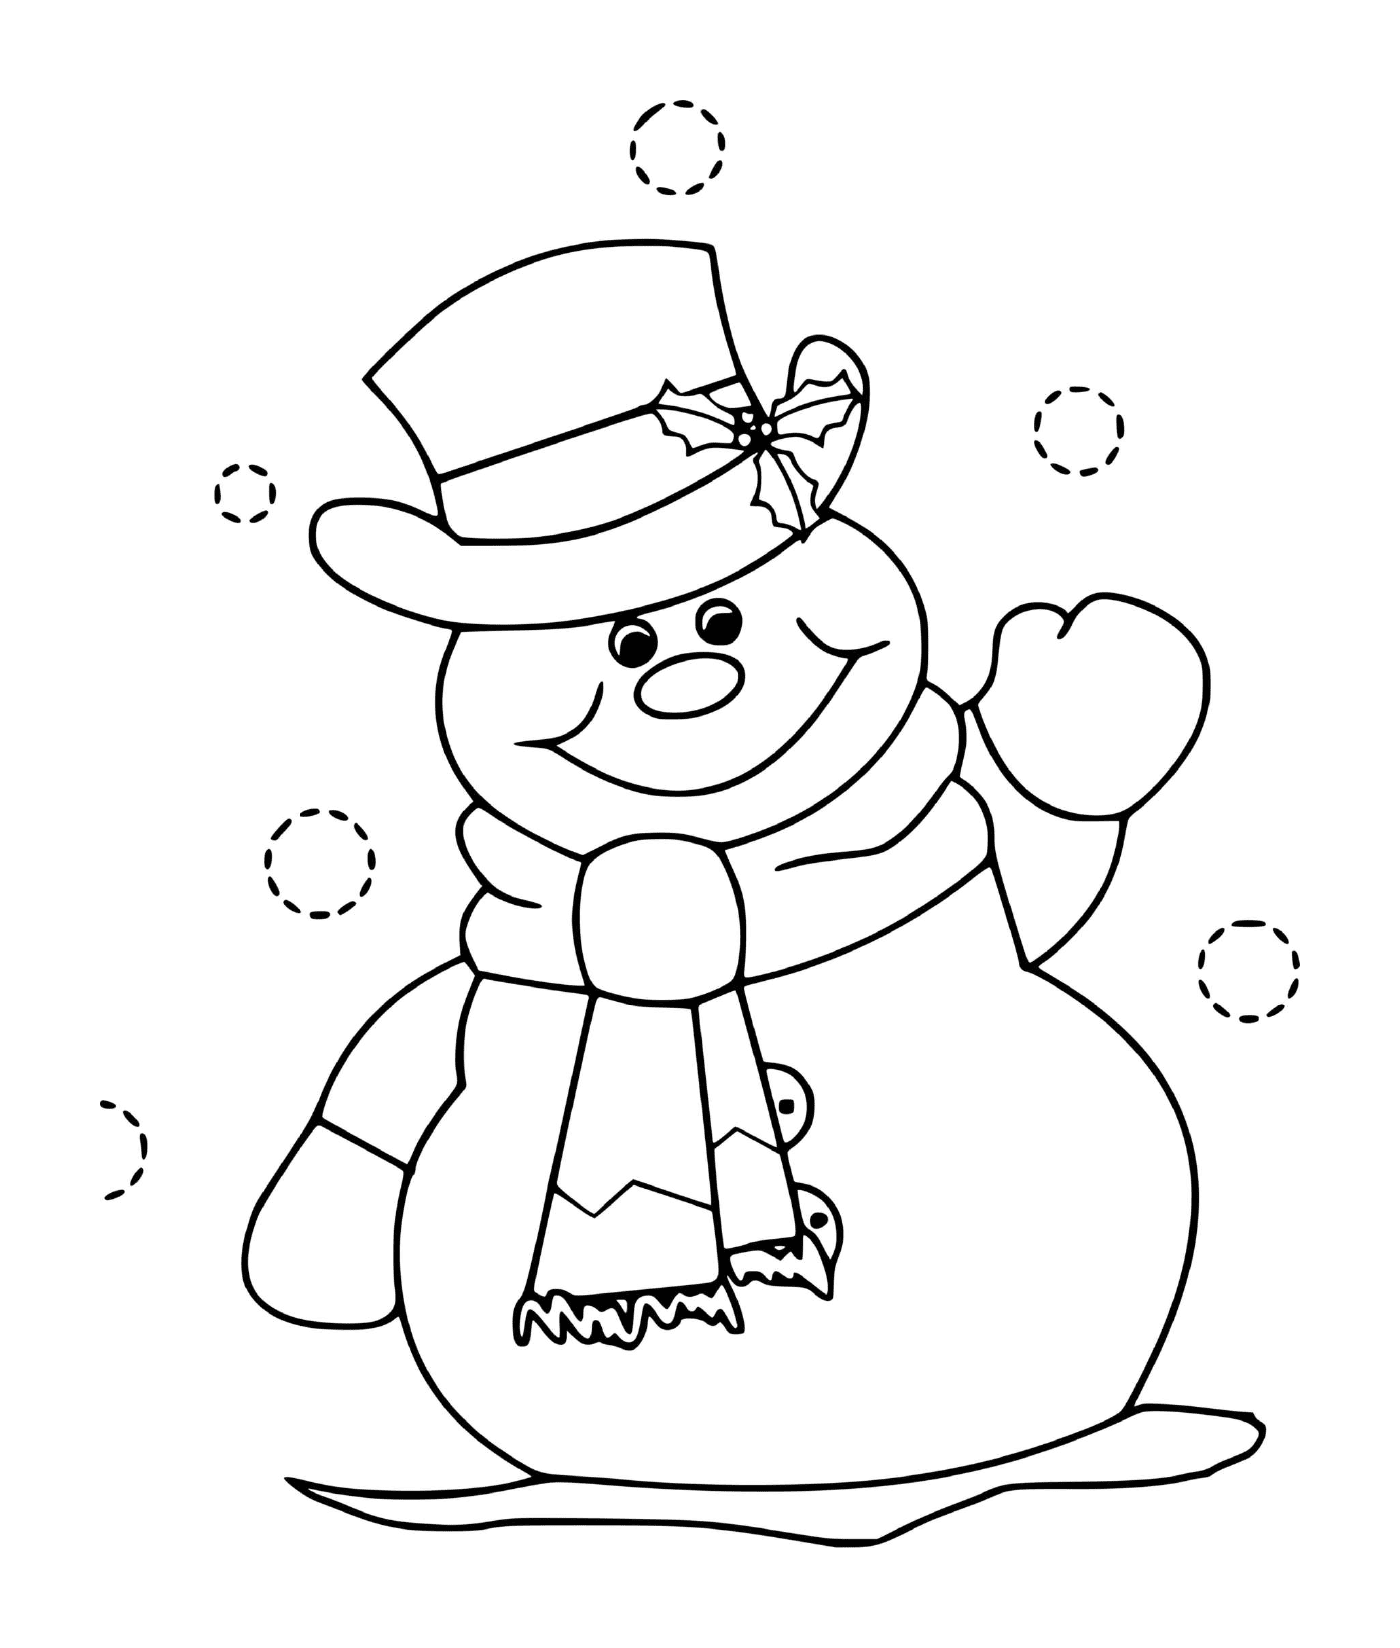  冬季雪人,微笑的帽子 